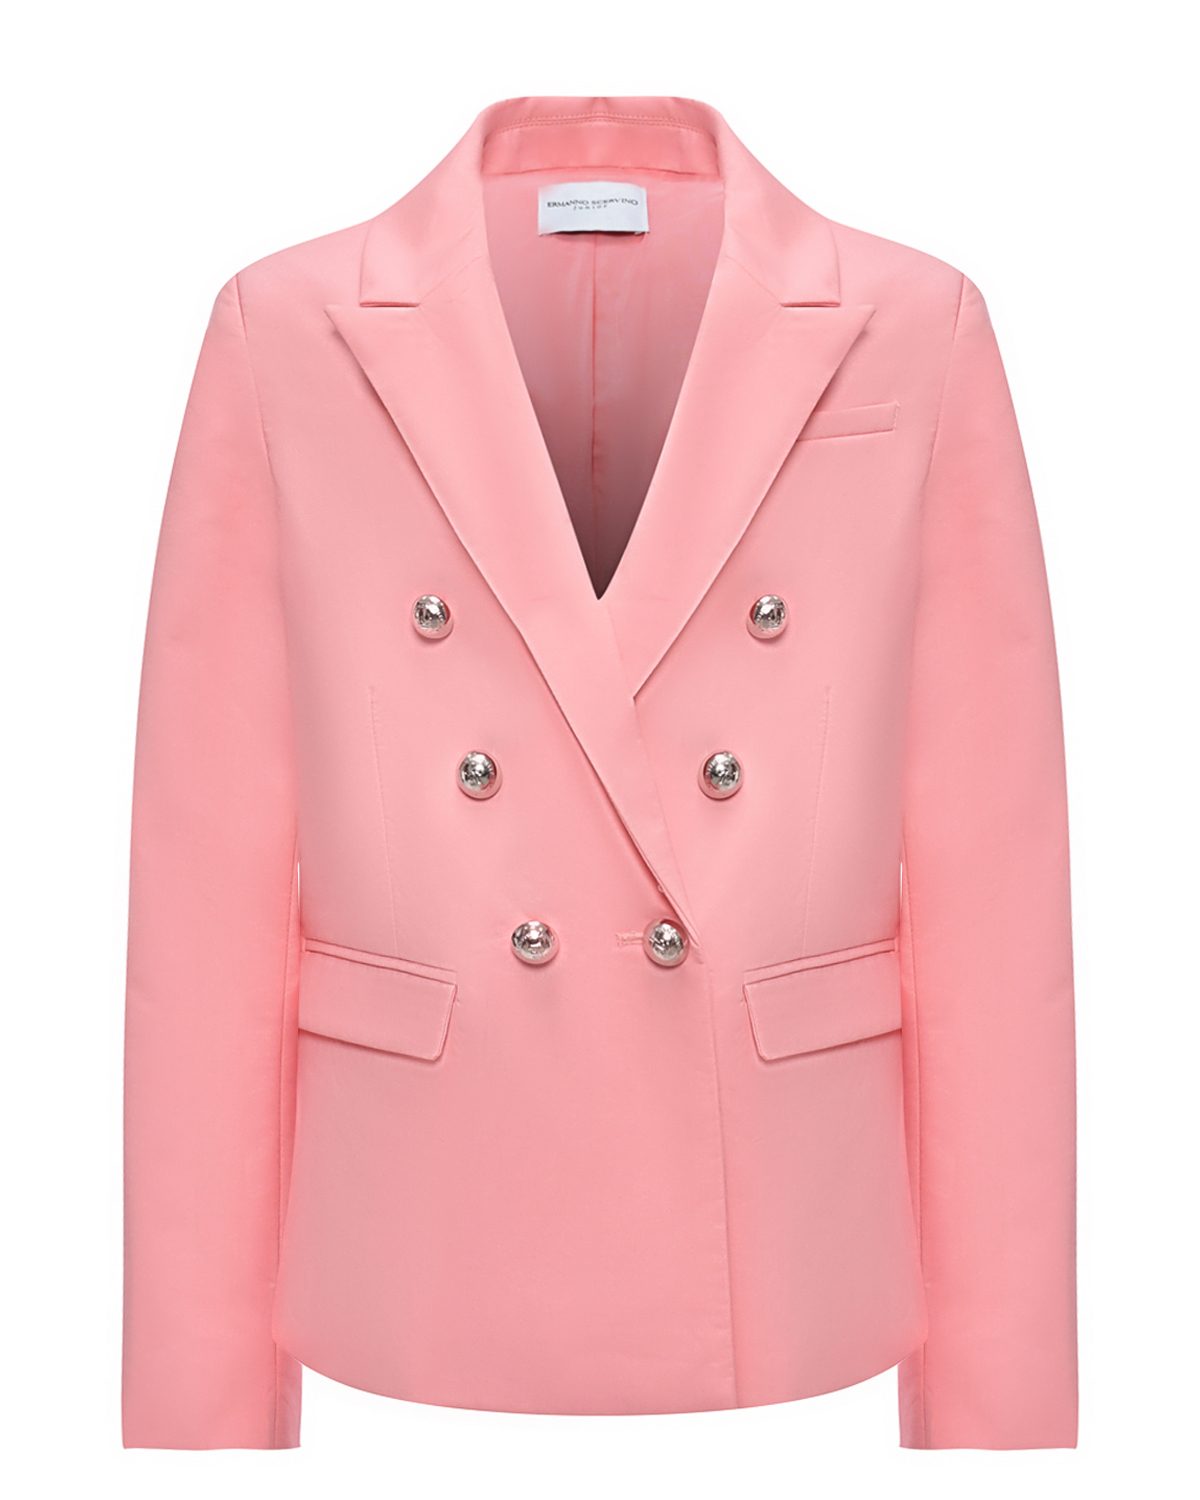 Двубортный пиджак, розовый Ermanno Scervino пиджак твидовый двубортный mist р 50 зеленый